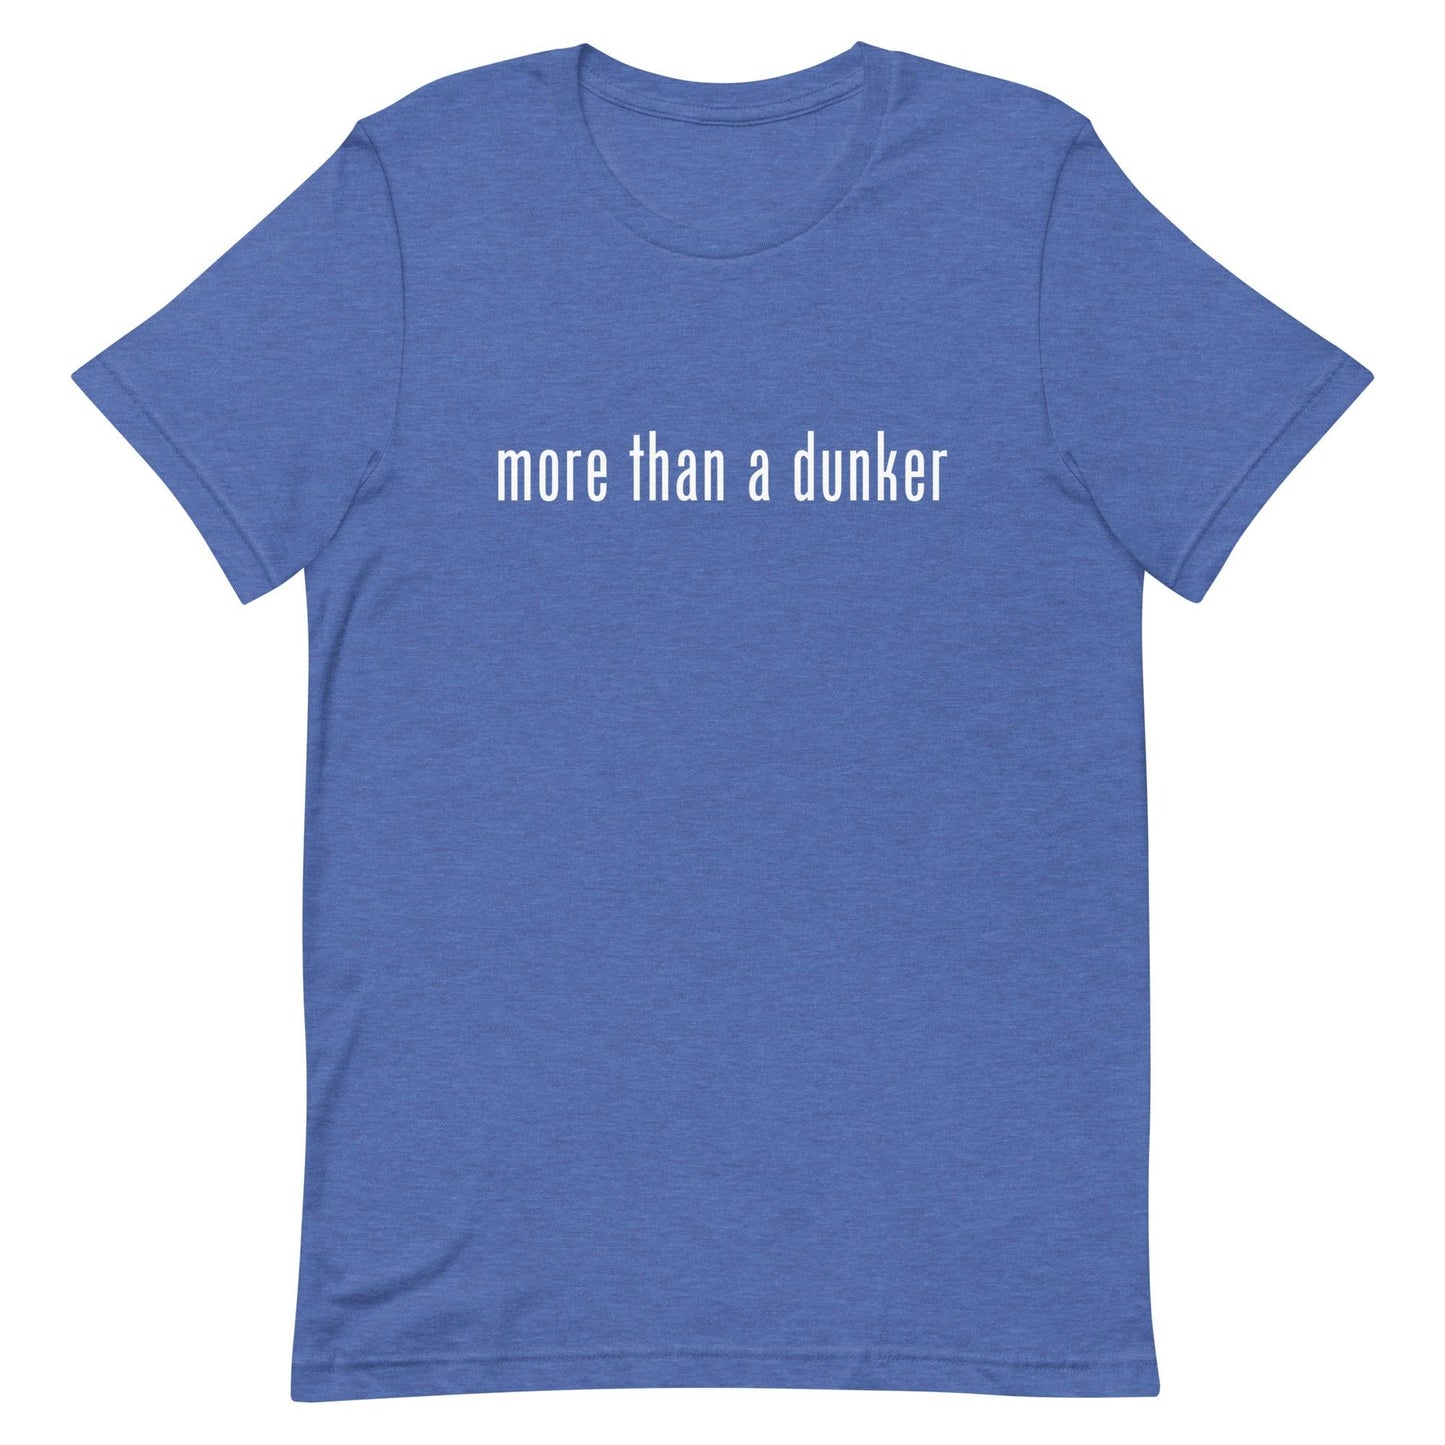 Chris Staples "More Than a Dunker" t-shirt - Fan Arch